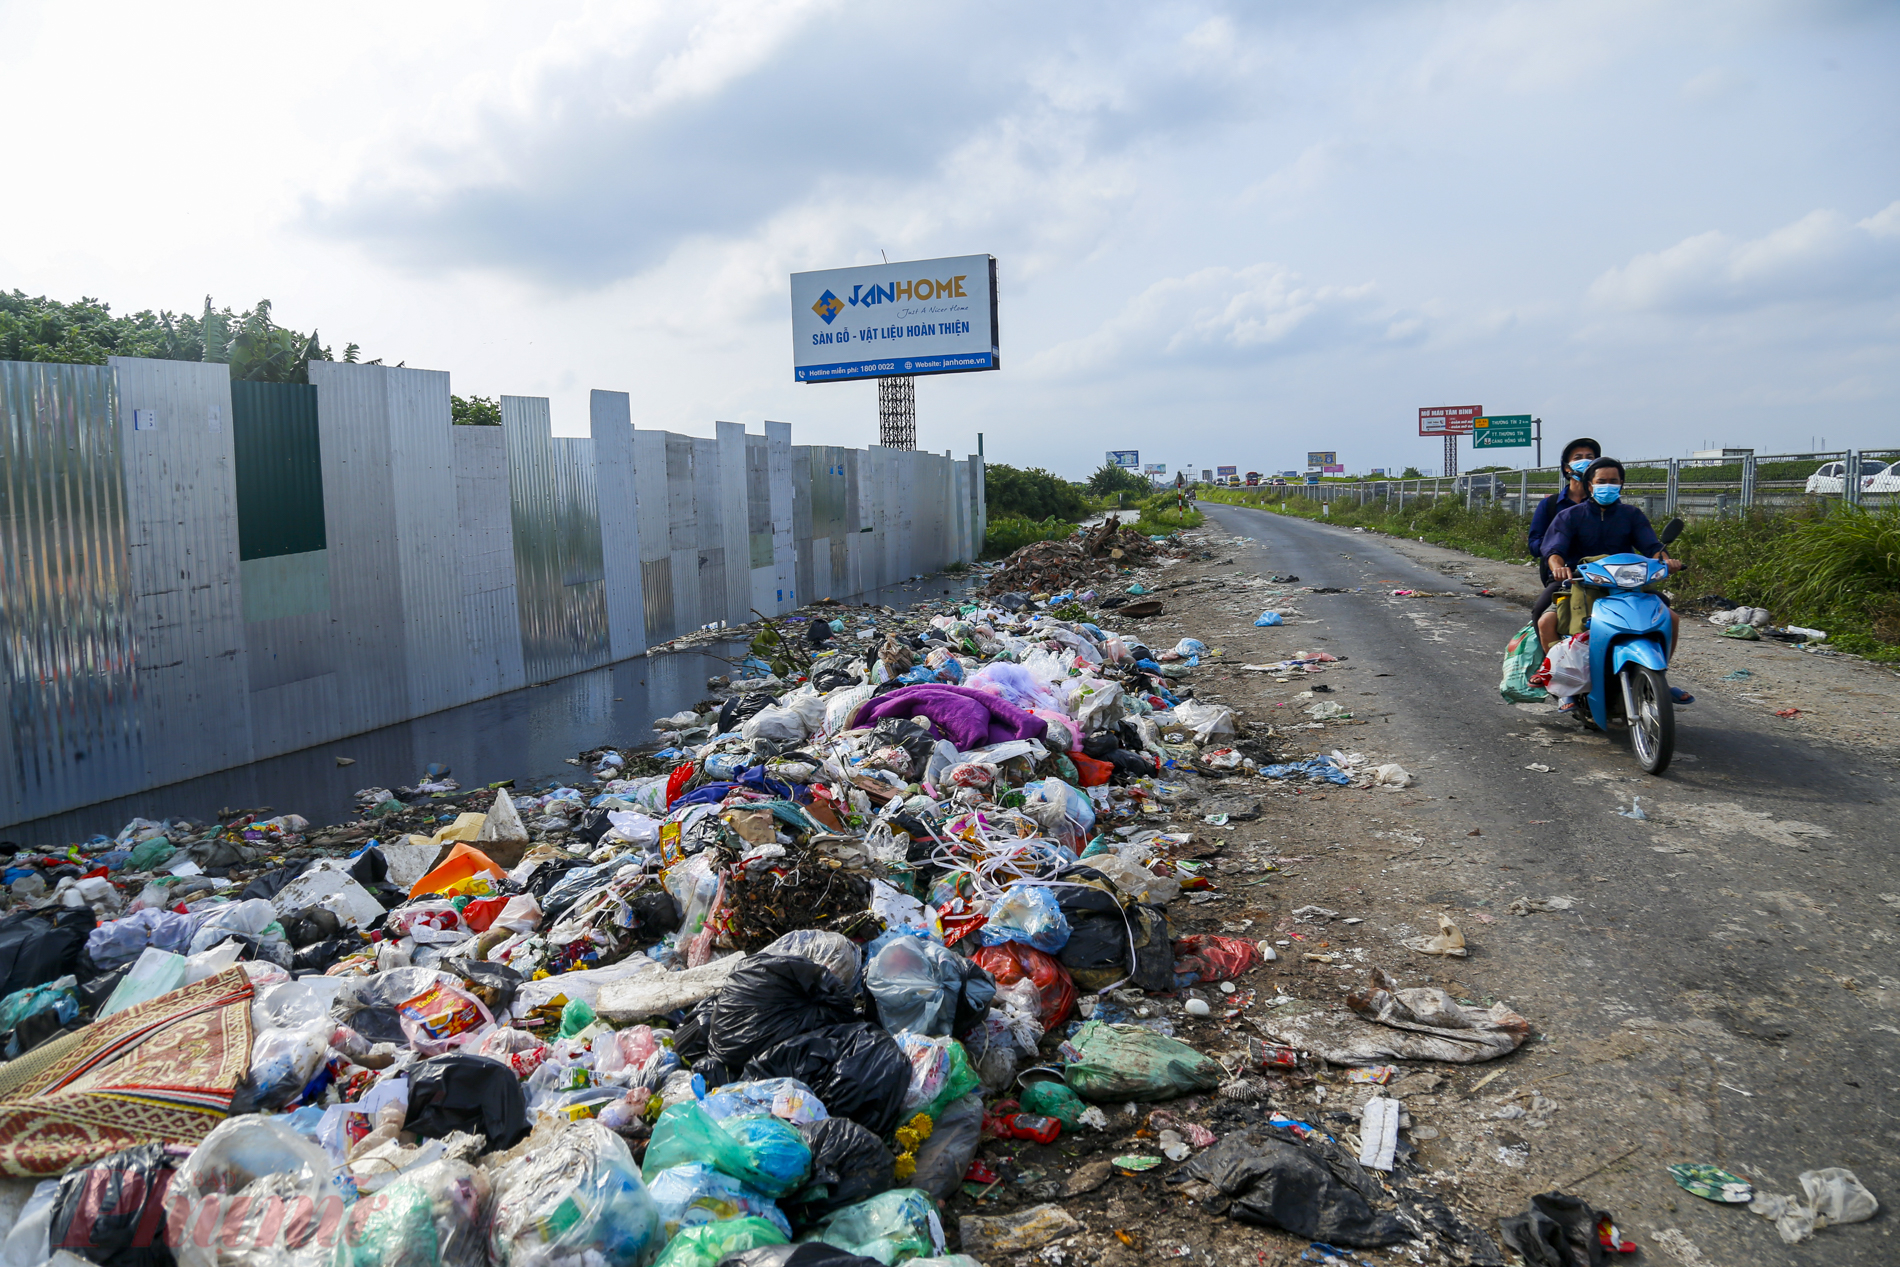 …. thậm chí rác còn tràn ra cả lòng đường gây mất mỹ quan đô thị cũng như nguy hiểm cho những người tham gia giao thông.